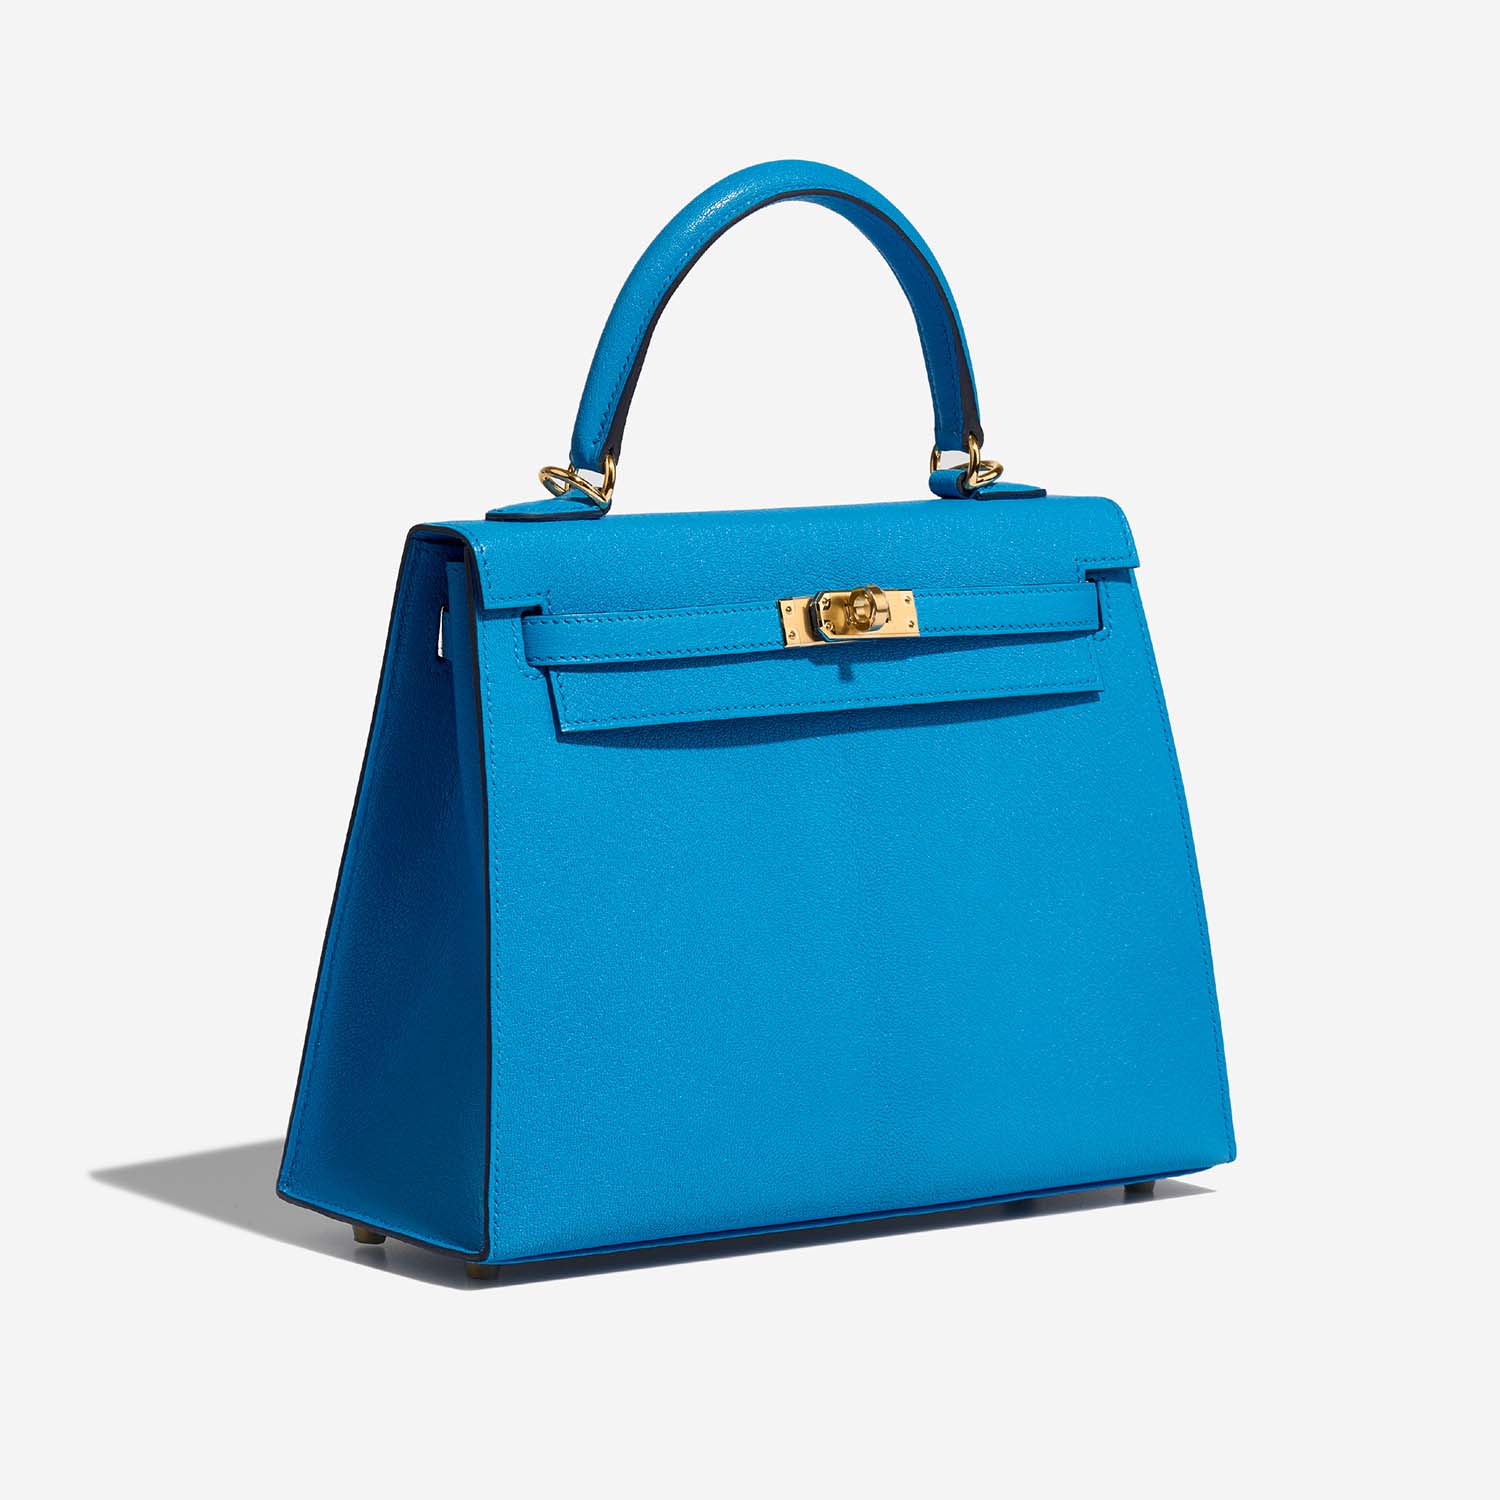 Hermès Kelly 25 BlueFrida 6SF S | Verkaufen Sie Ihre Designertasche auf Saclab.com